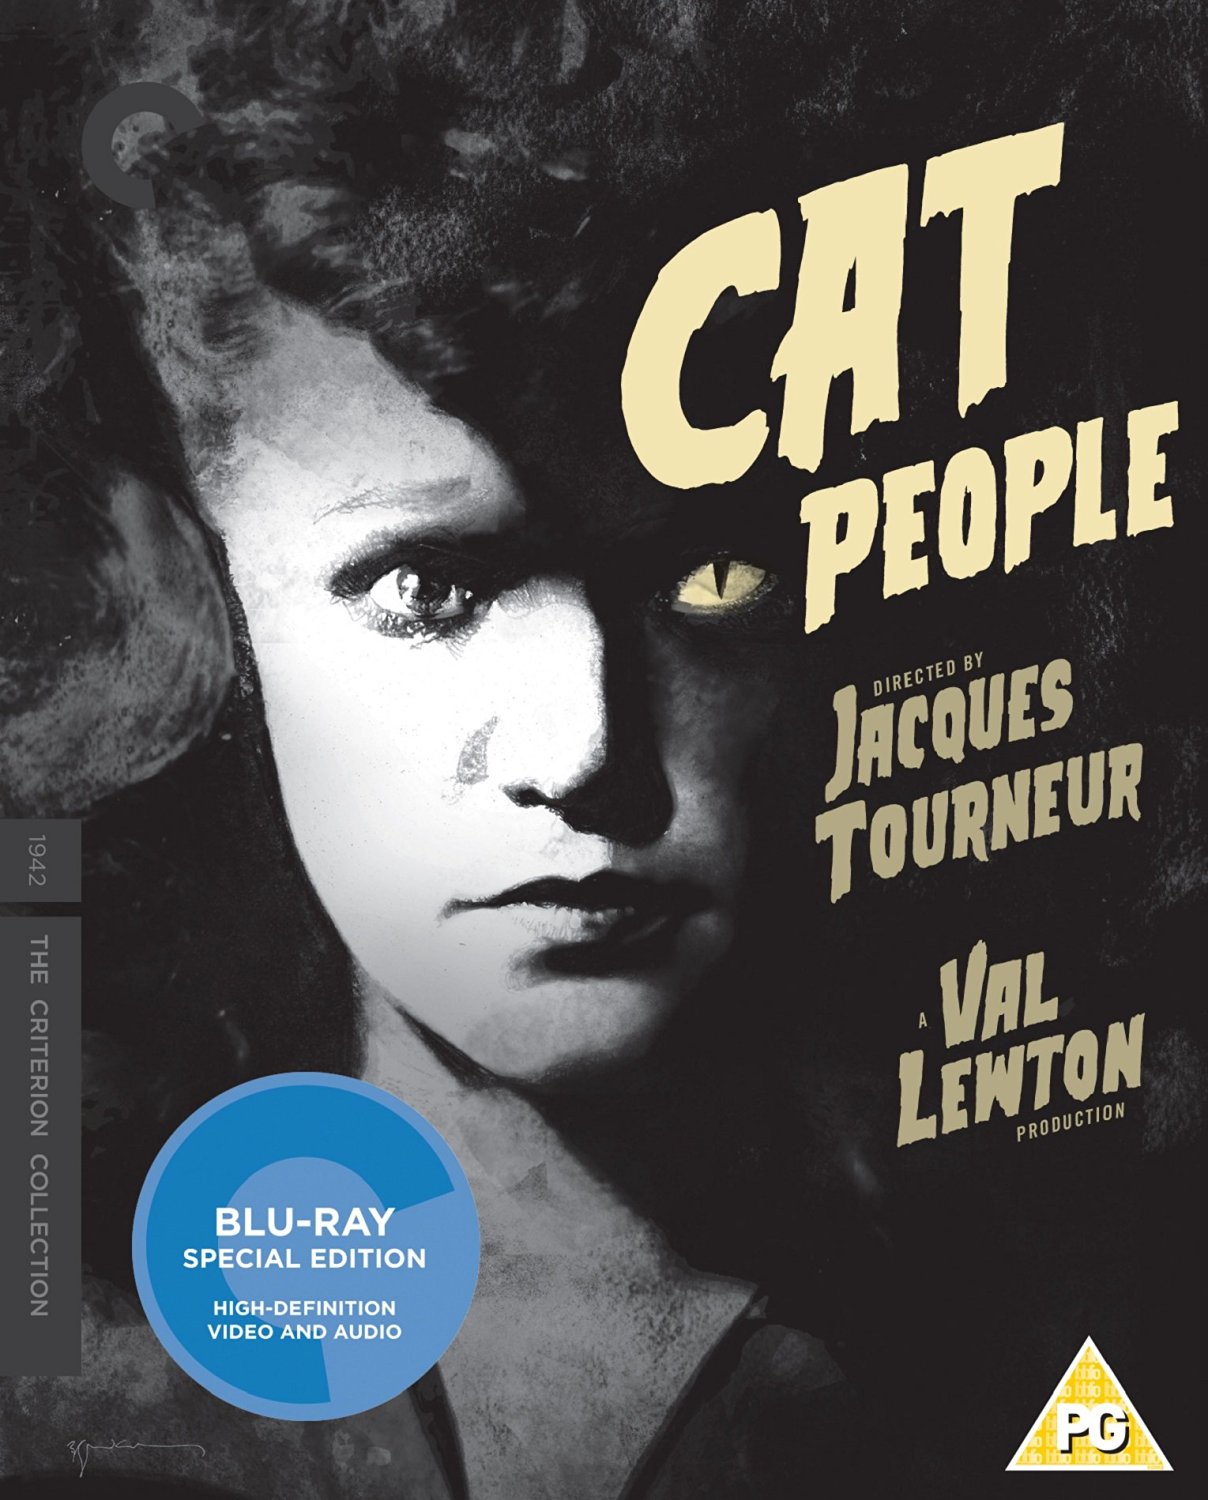 Cat People Blu-ray review: feline fear